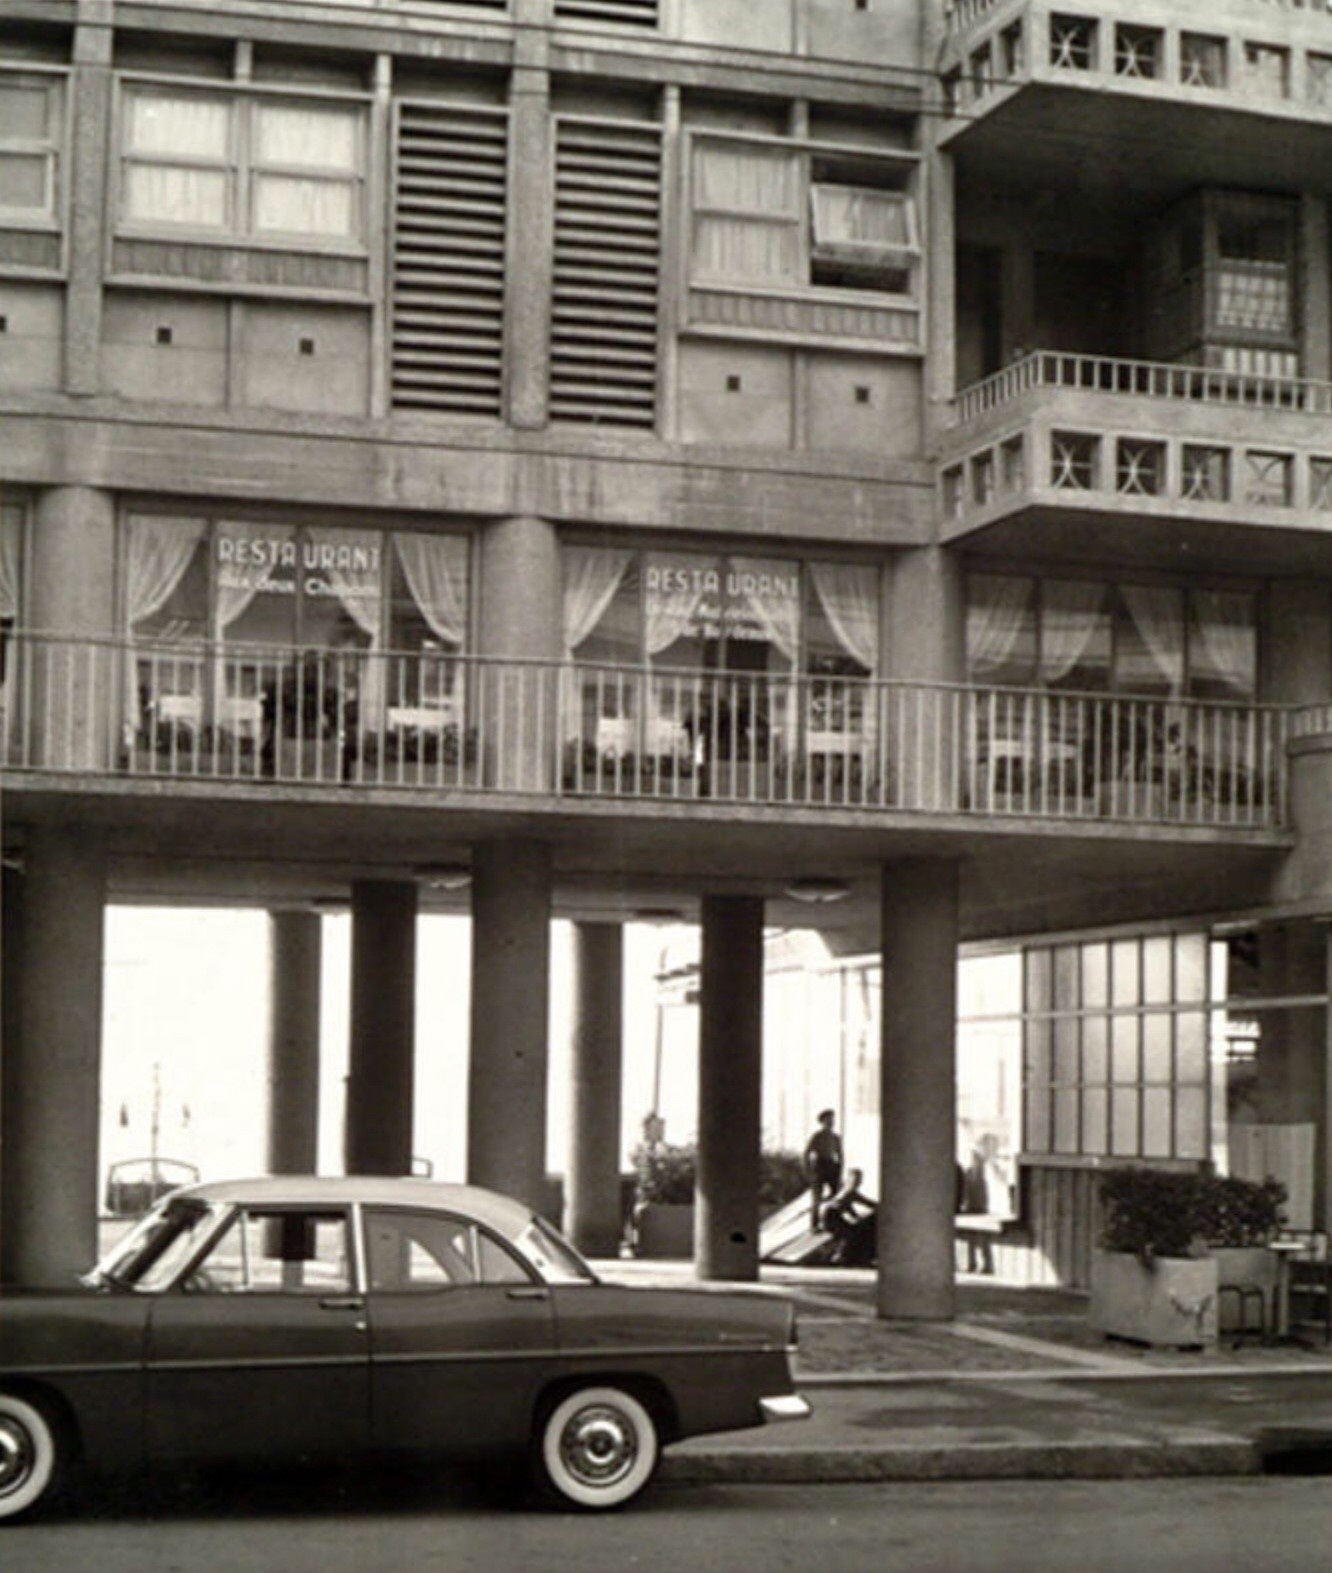 1952 - Immeuble de la Frontale, ouverture de guichets sous les pilotis